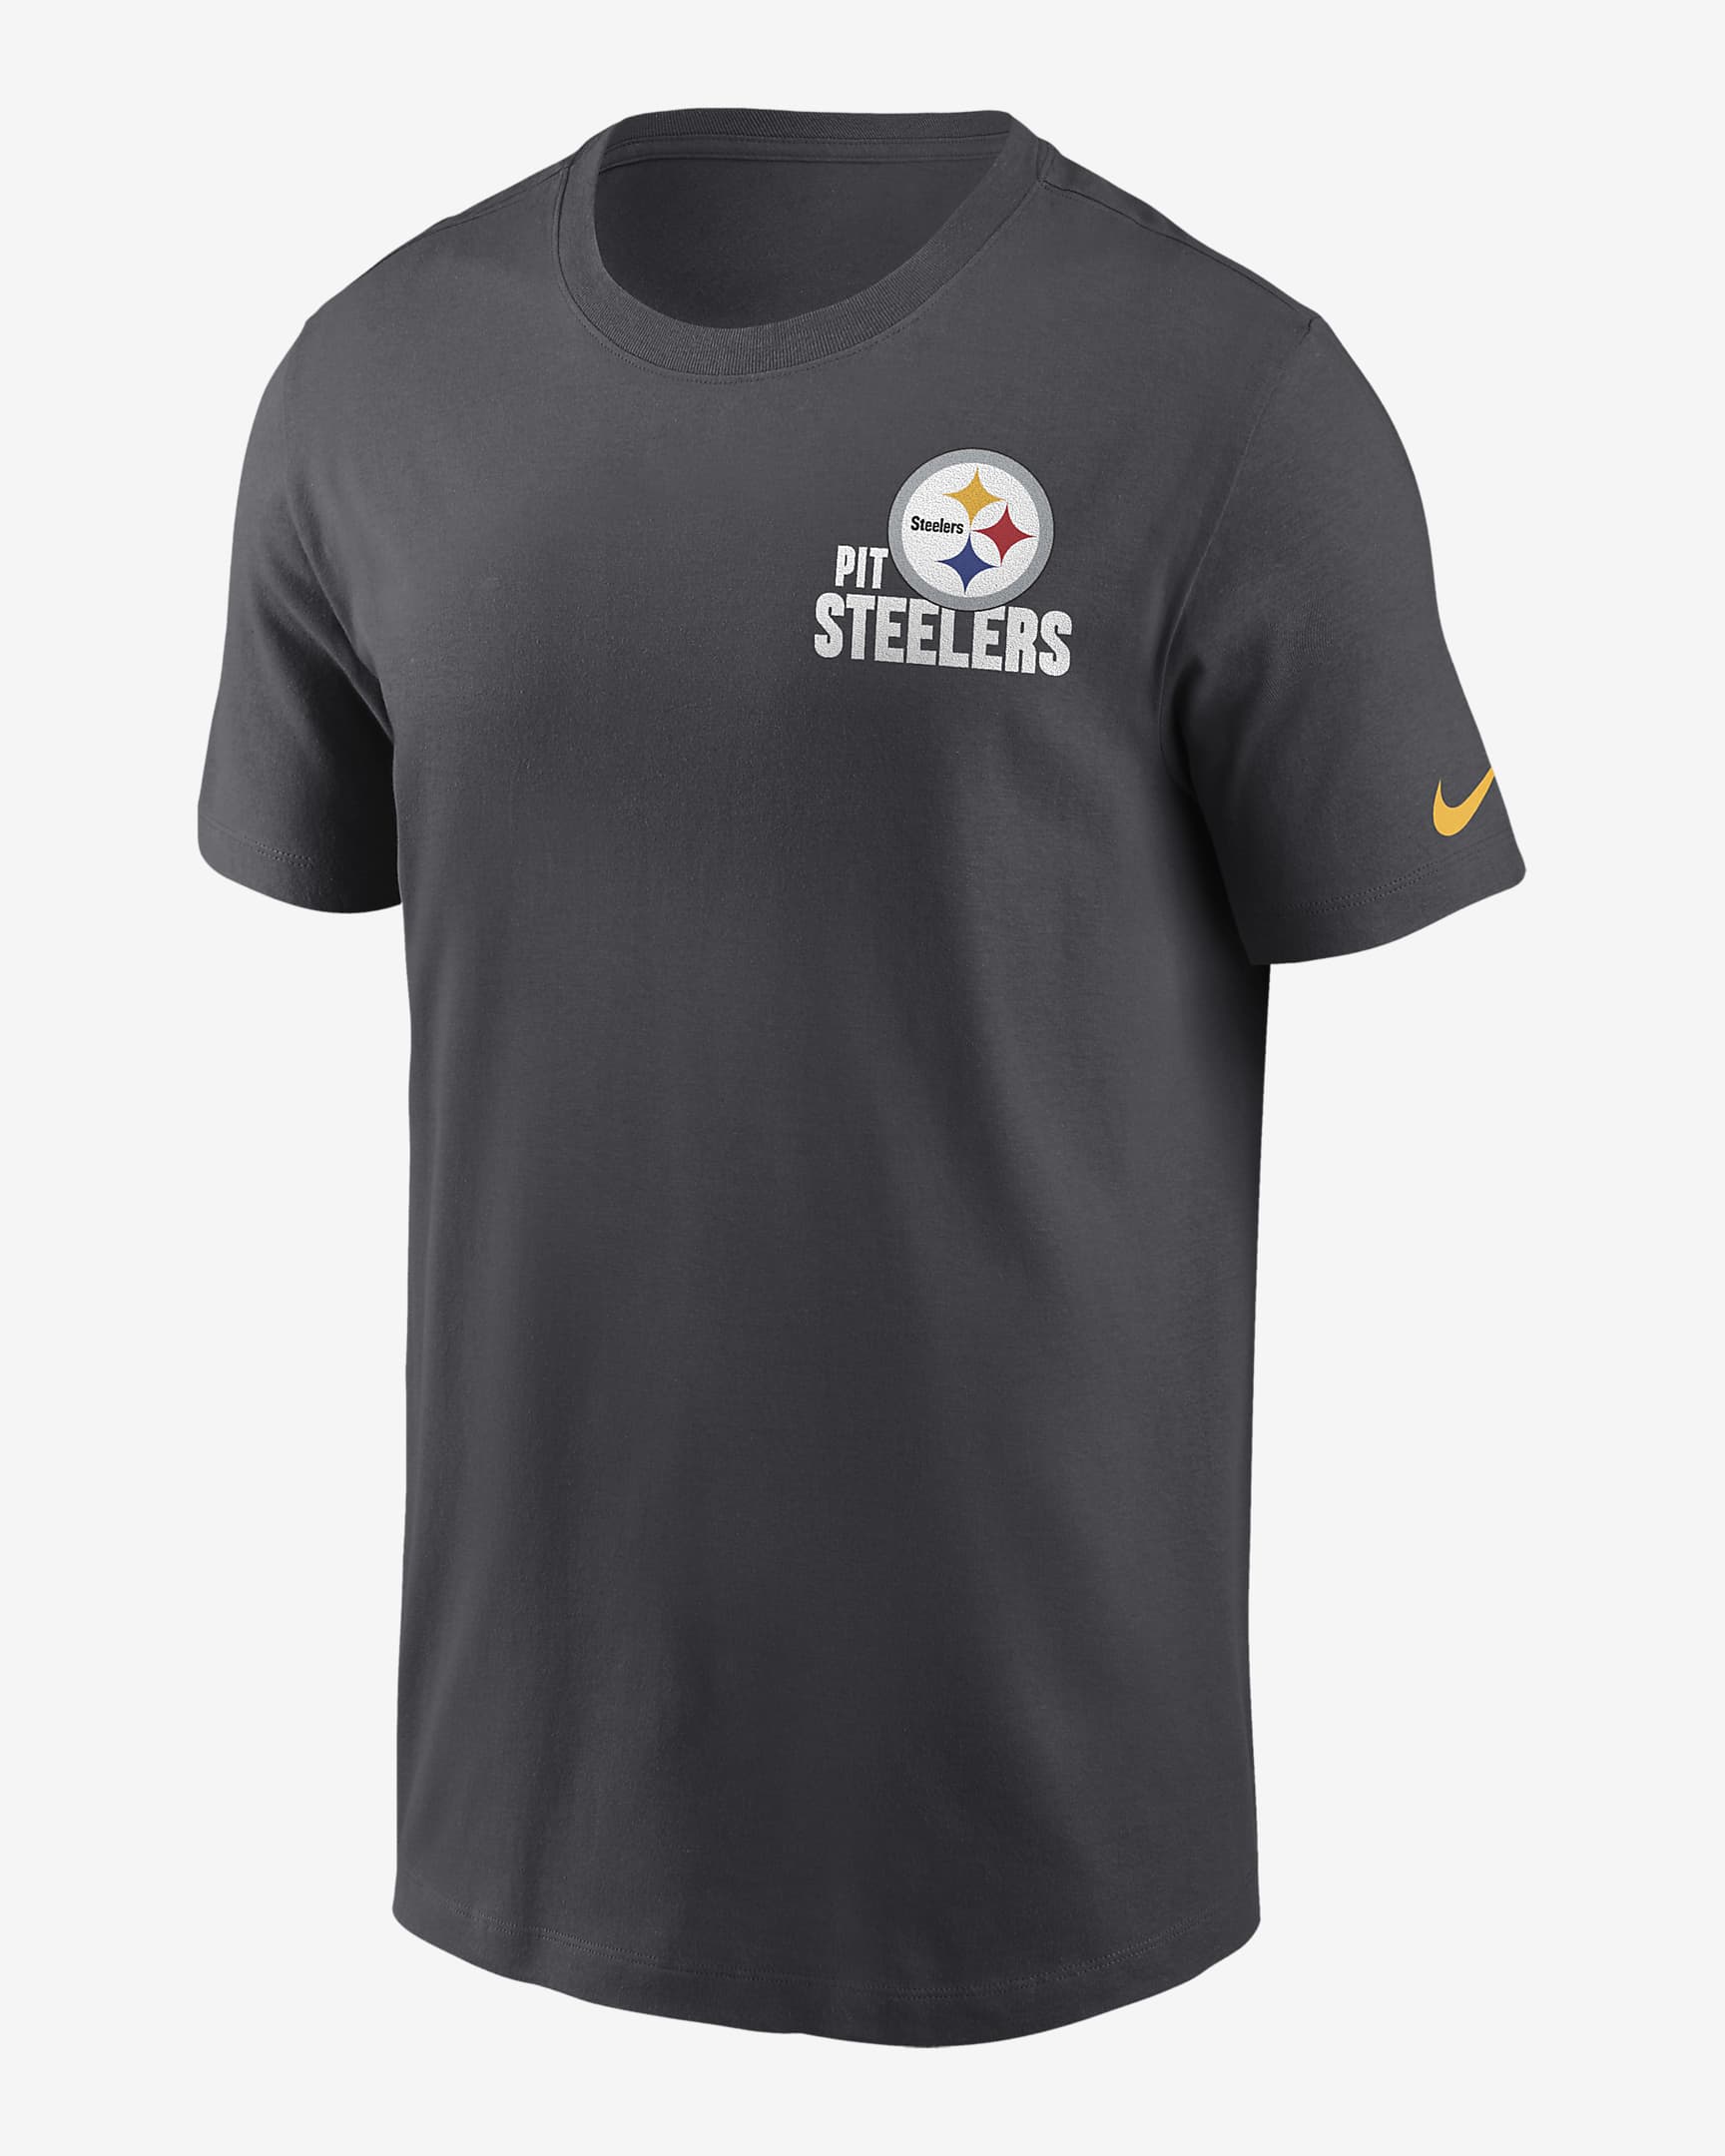 Playera Nike de la NFL para hombre Pittsburgh Steelers Blitz Team ...